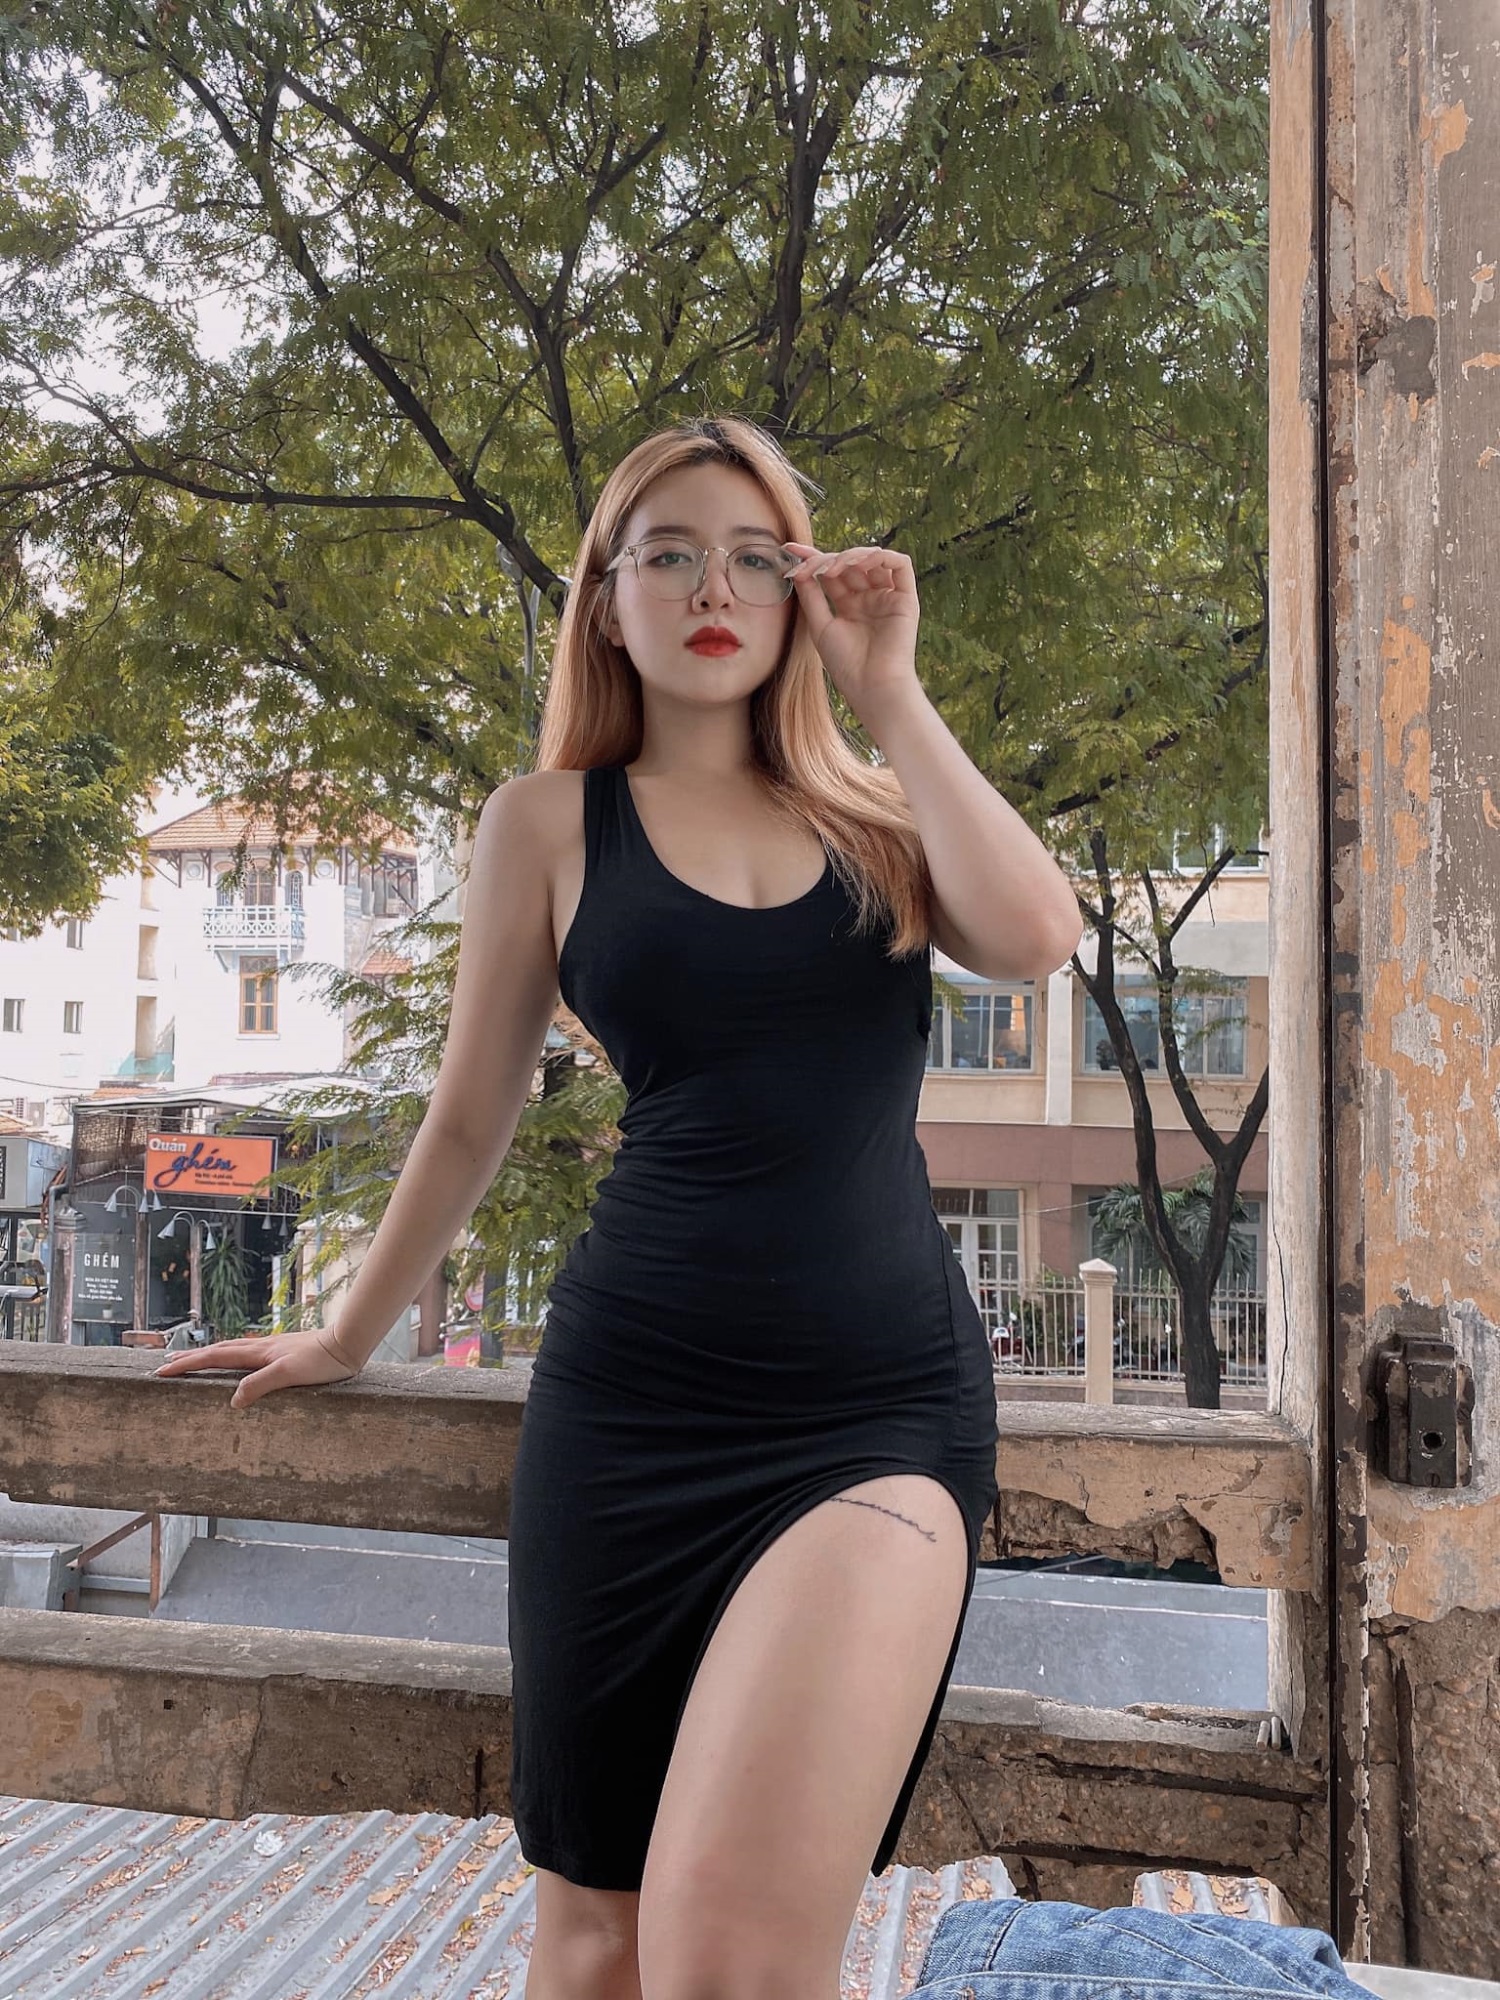 Hot girl Quảng Ngãi theo đuổi style quyến rũ 'hết nấc' và cái kết phải 'mỏi tay' chặn tin nhắn vì quá sexy - Ảnh 7